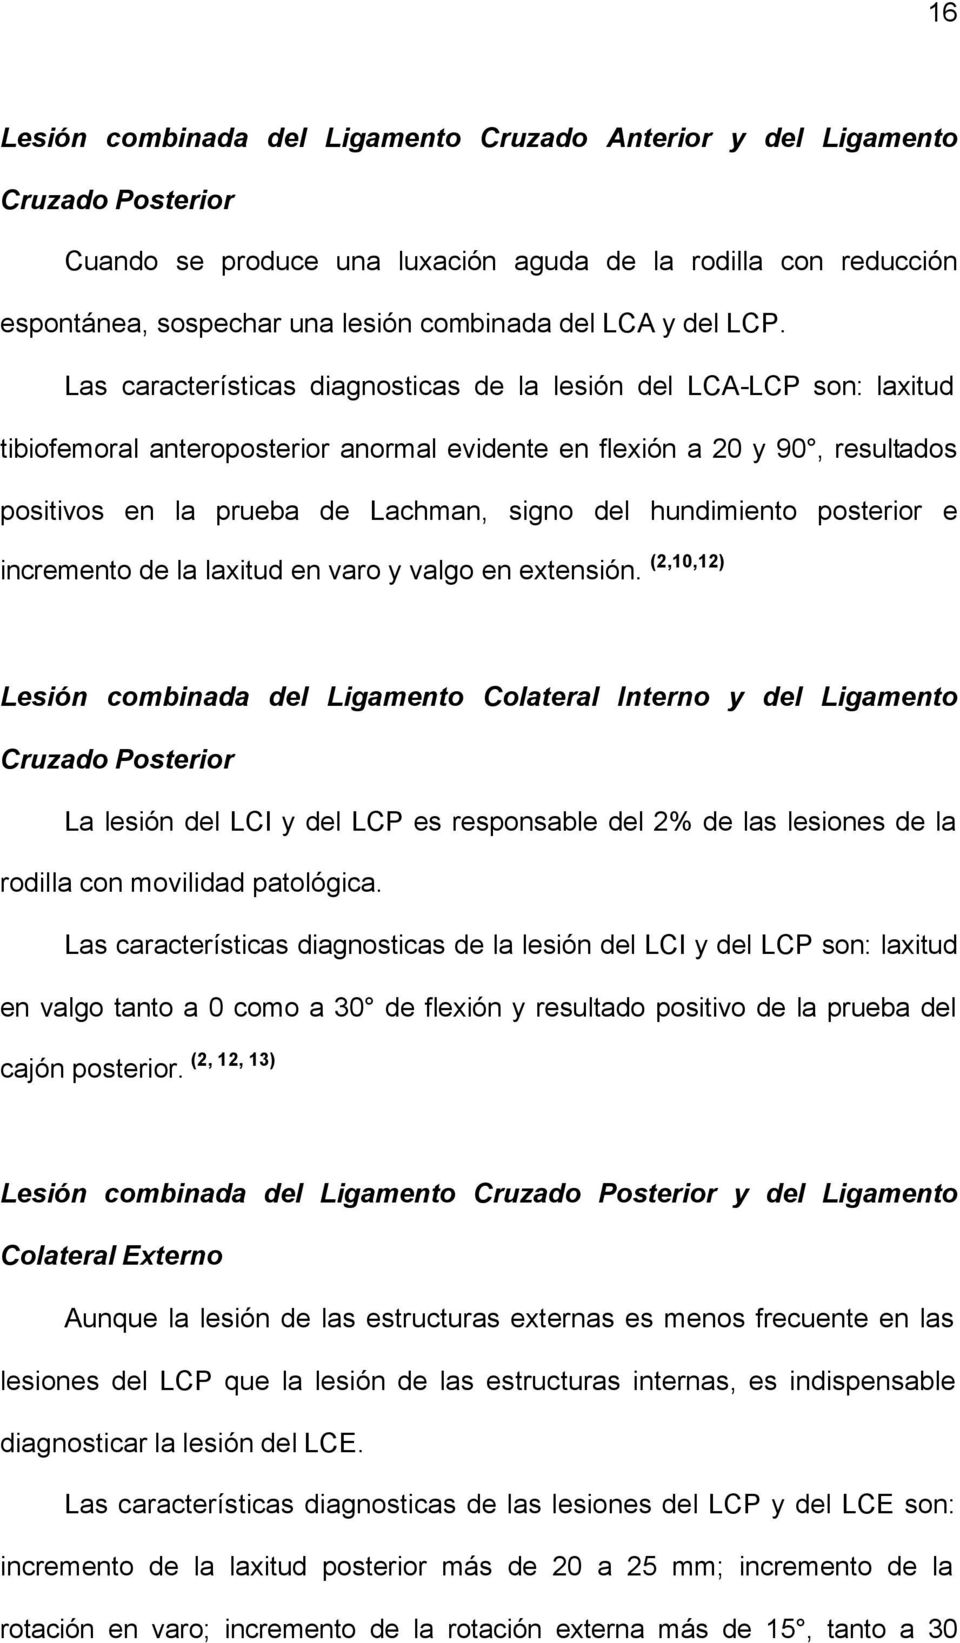 Las características diagnosticas de la lesión del LCA-LCP son: laxitud tibiofemoral anteroposterior anormal evidente en flexión a 20 y 90, resultados positivos en la prueba de Lachman, signo del